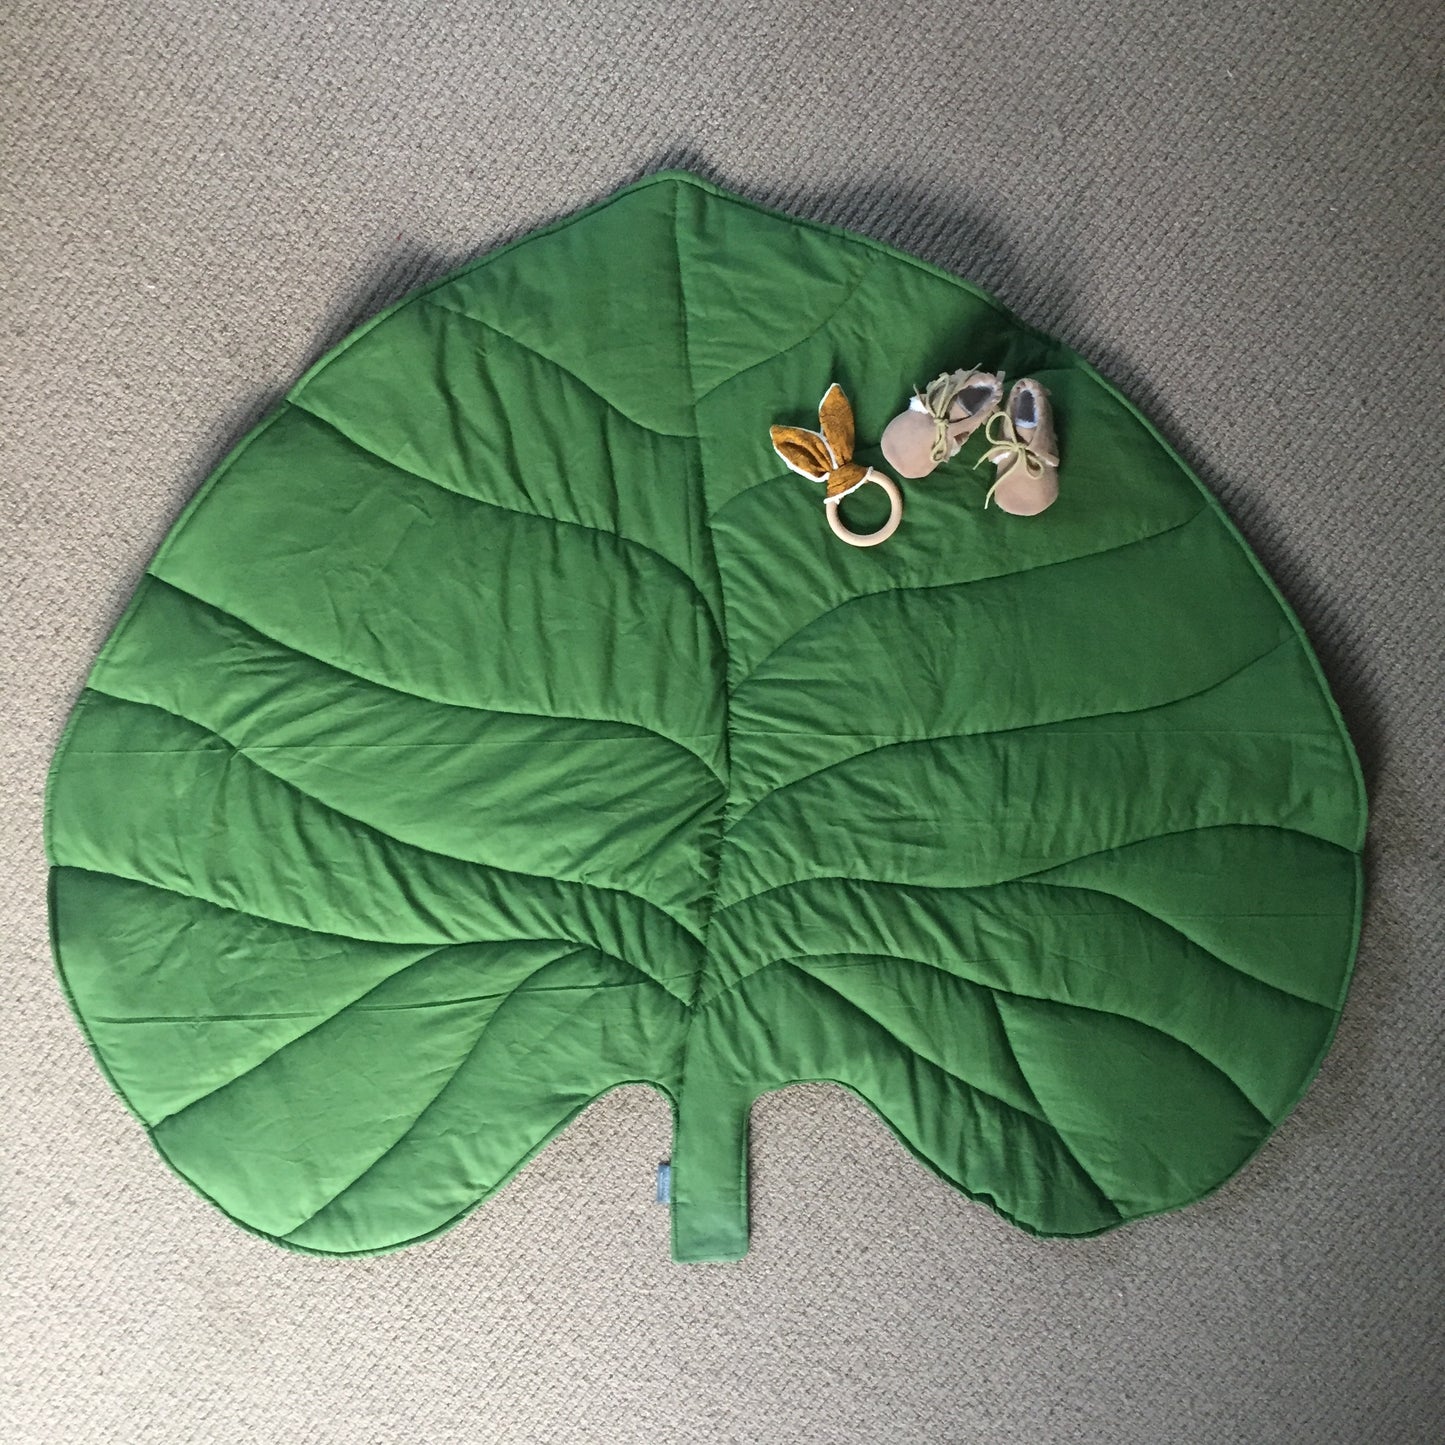 Leaf Playmat